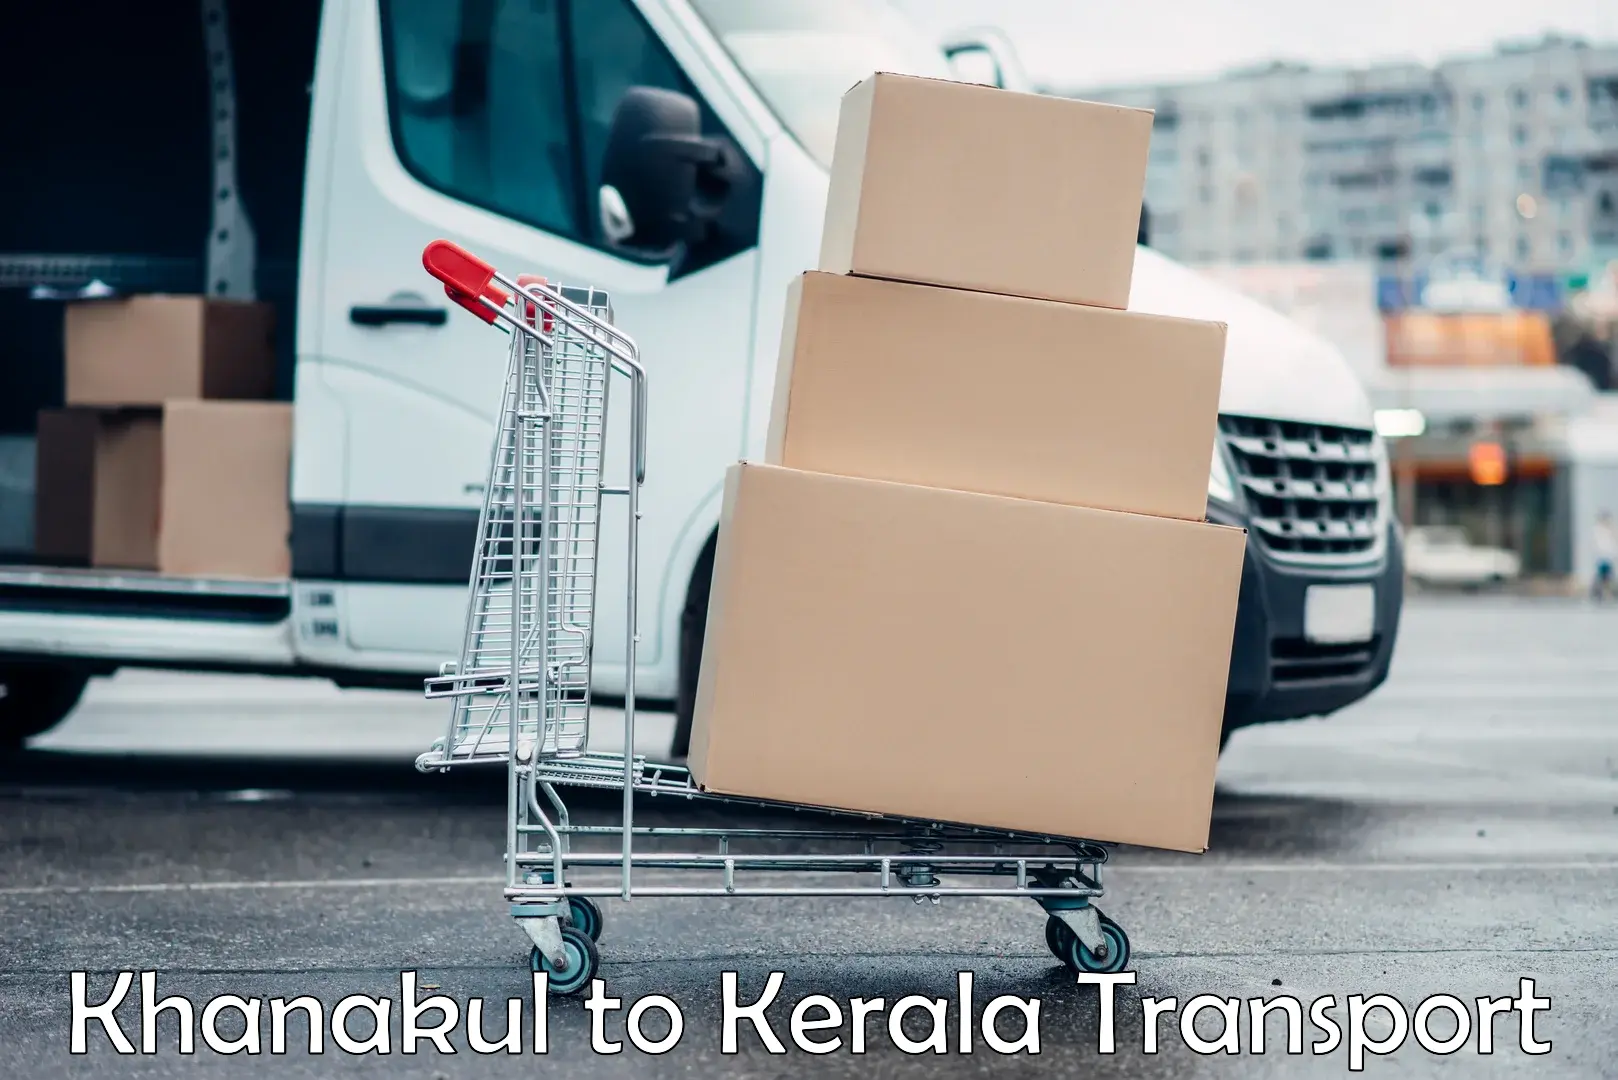 Nearby transport service Khanakul to Kerala